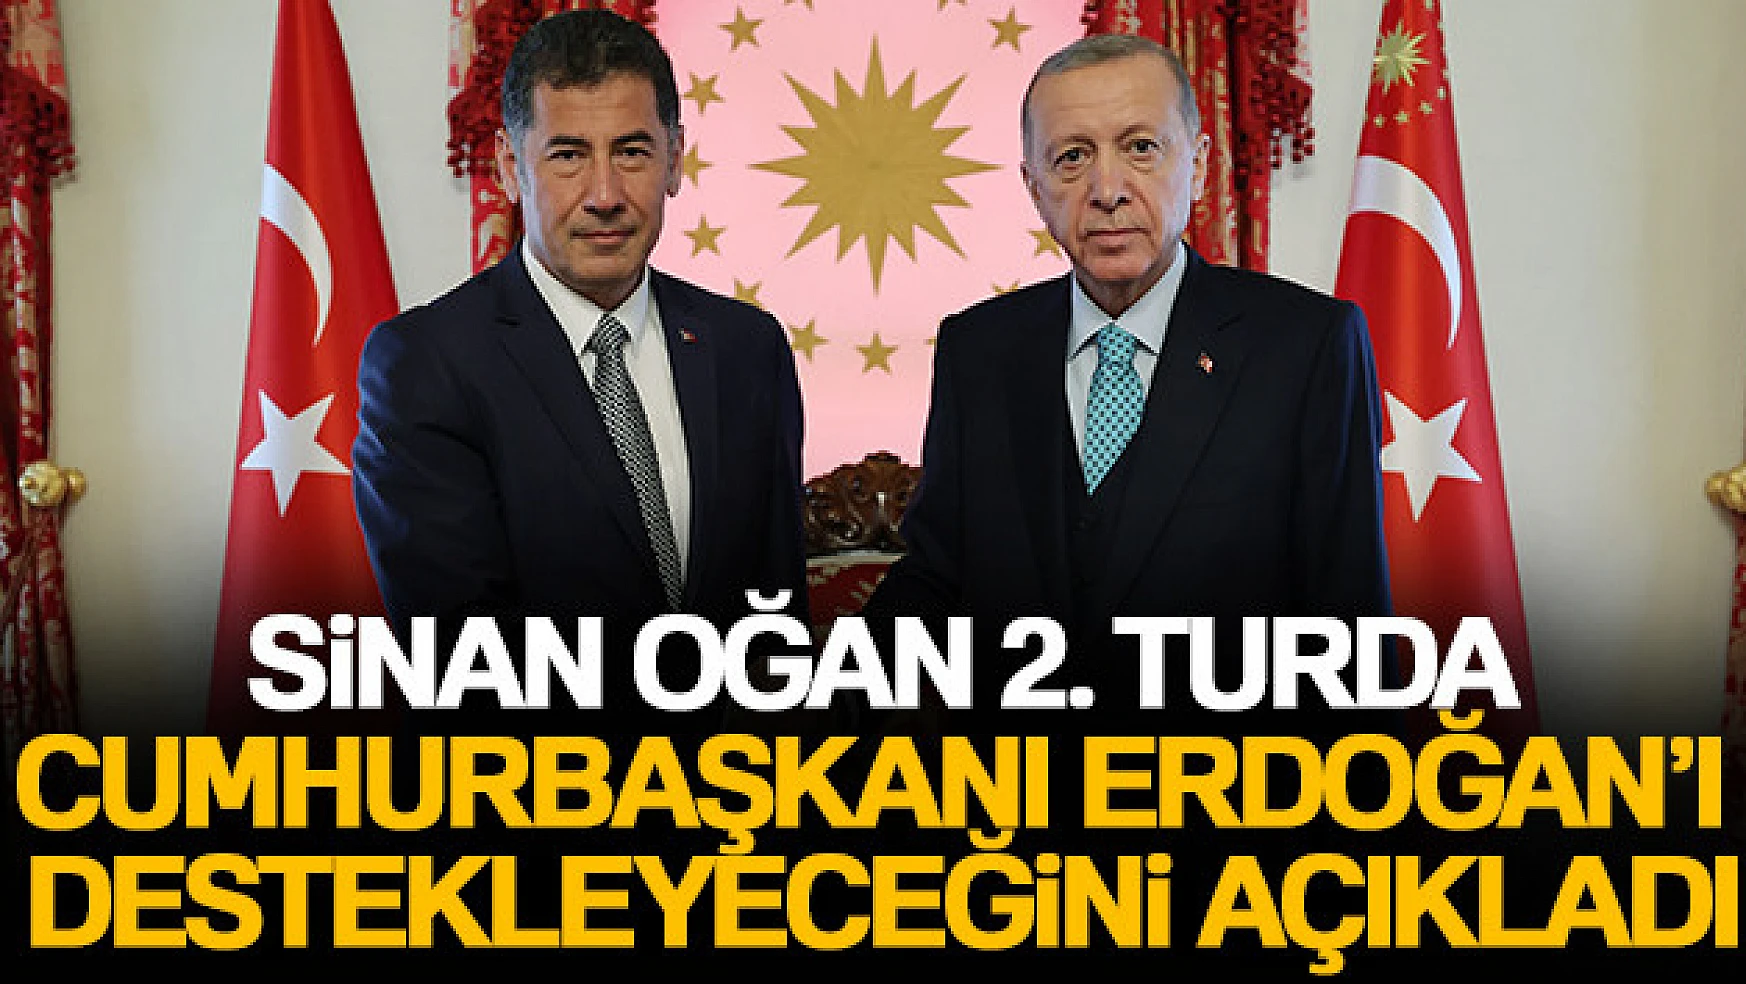 Sinan Oğan: '2.turda Cumhurbaşkanı Erdoğan'ı destekleyeceğiz'